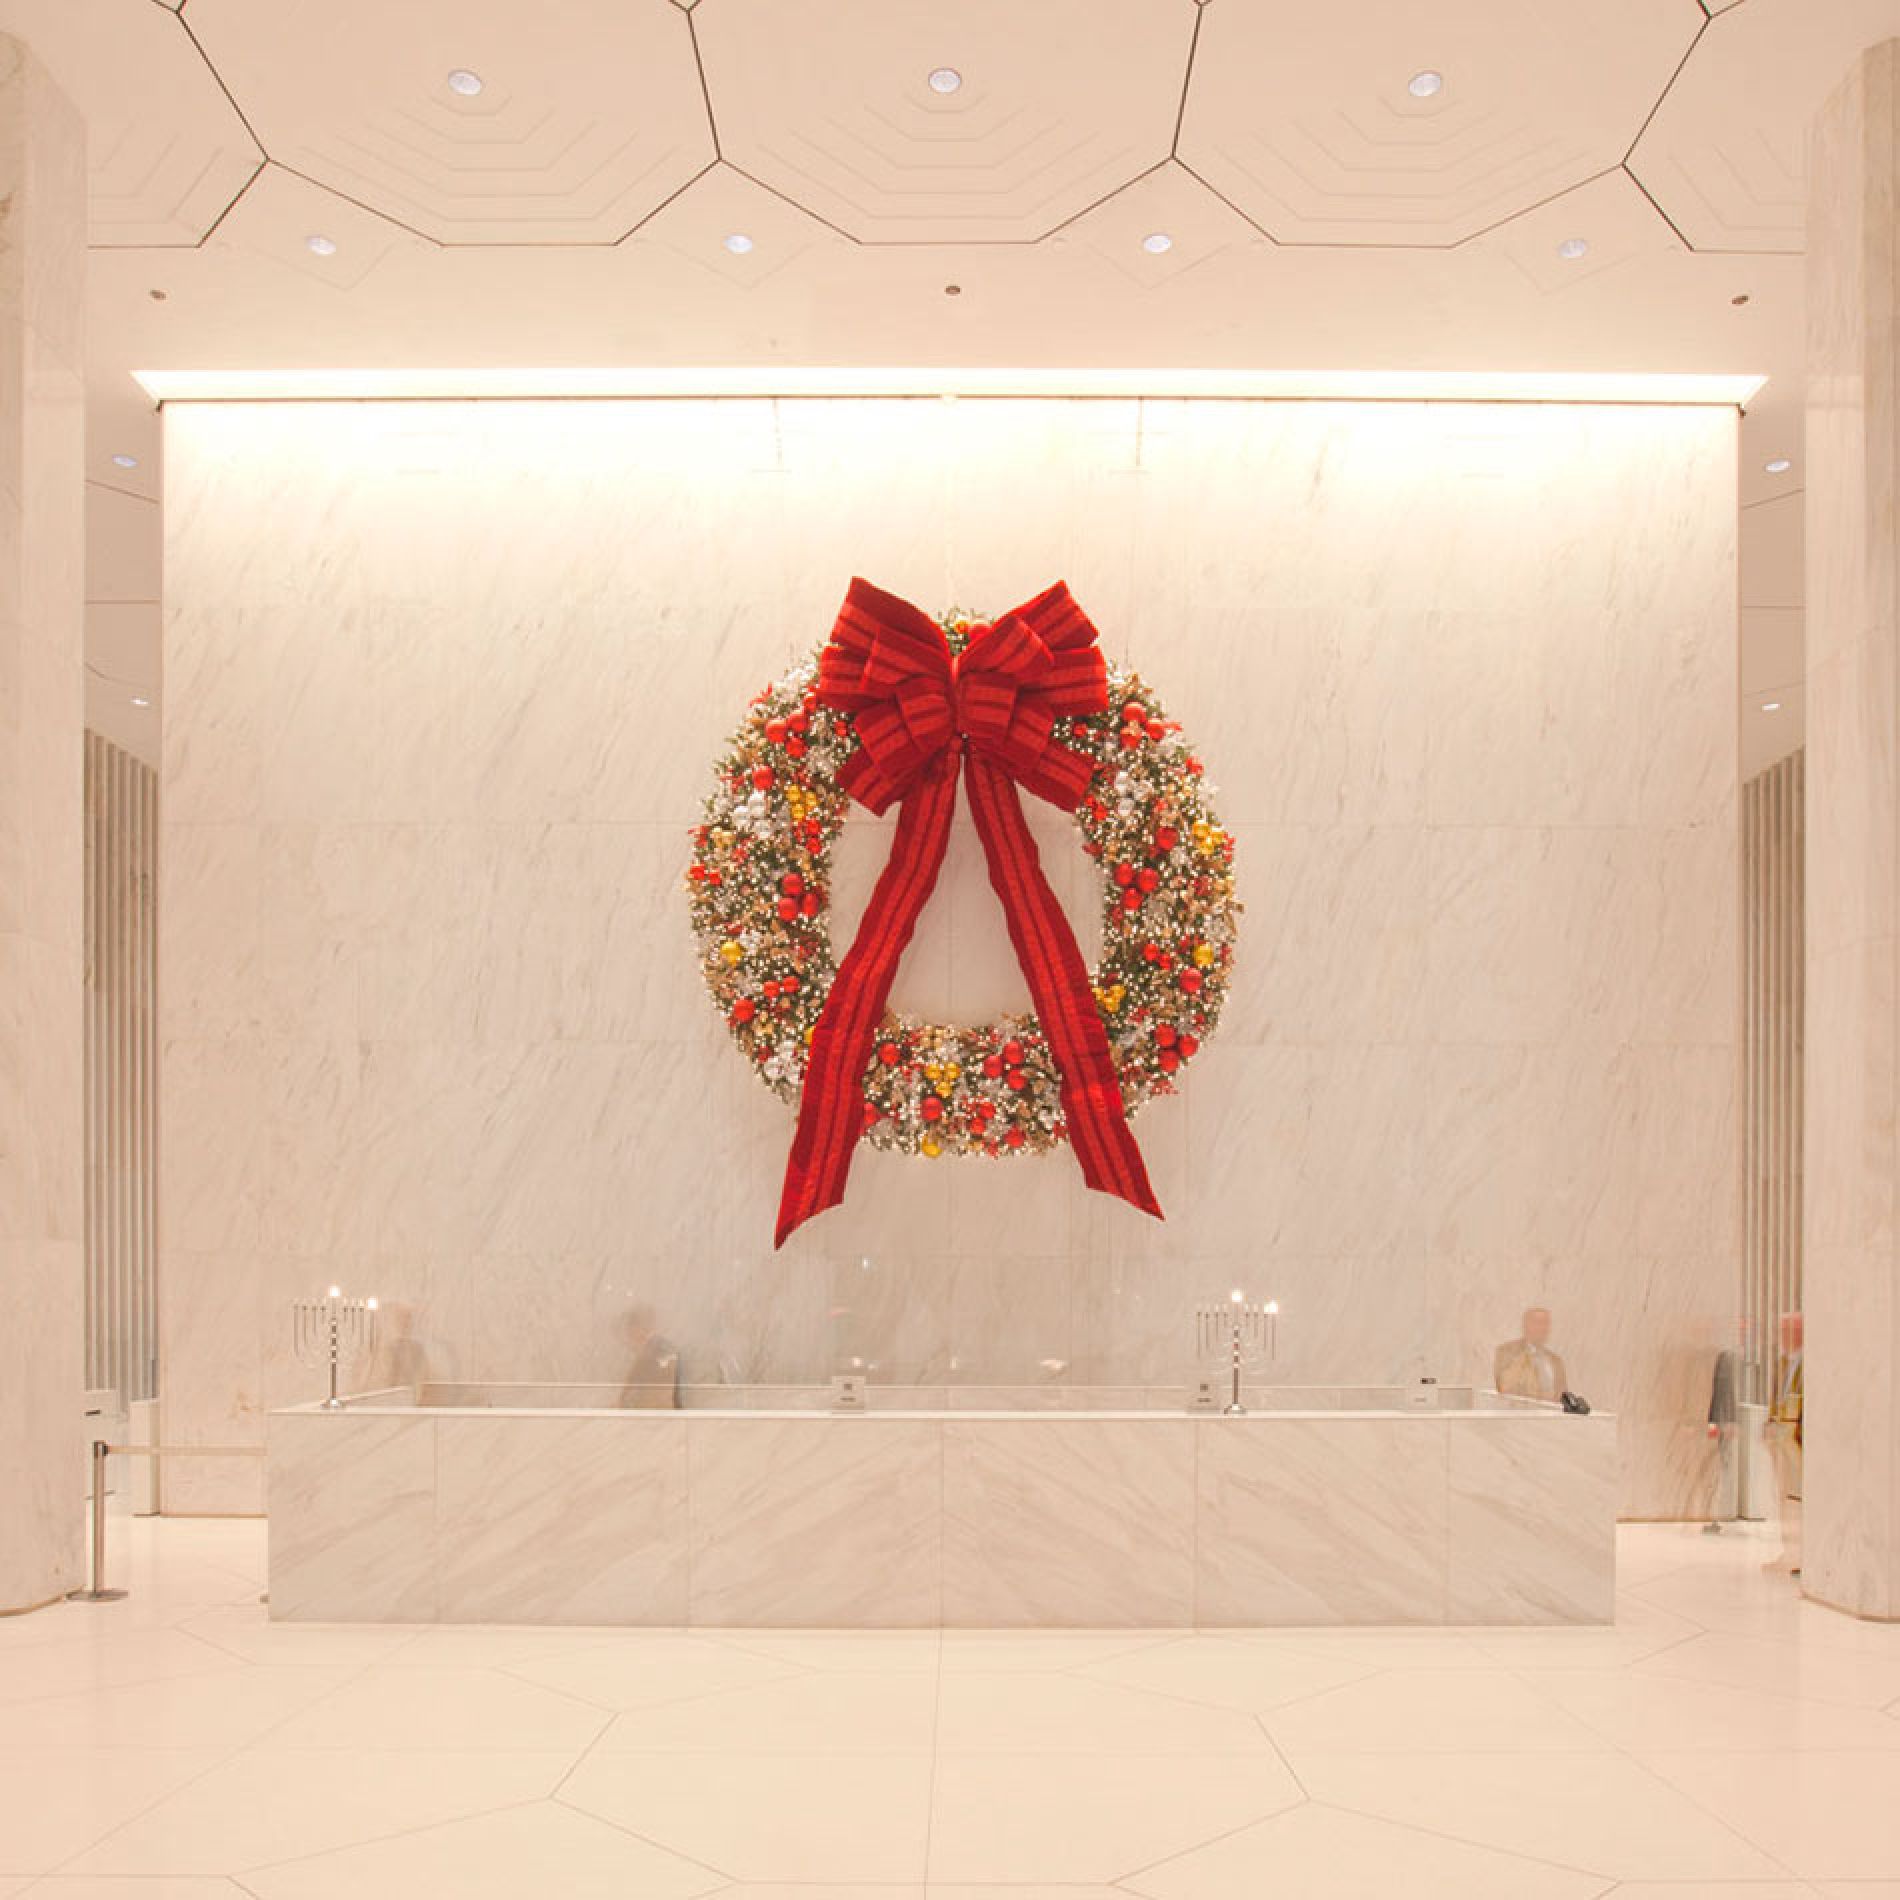 Time Warner Center Gallery Image